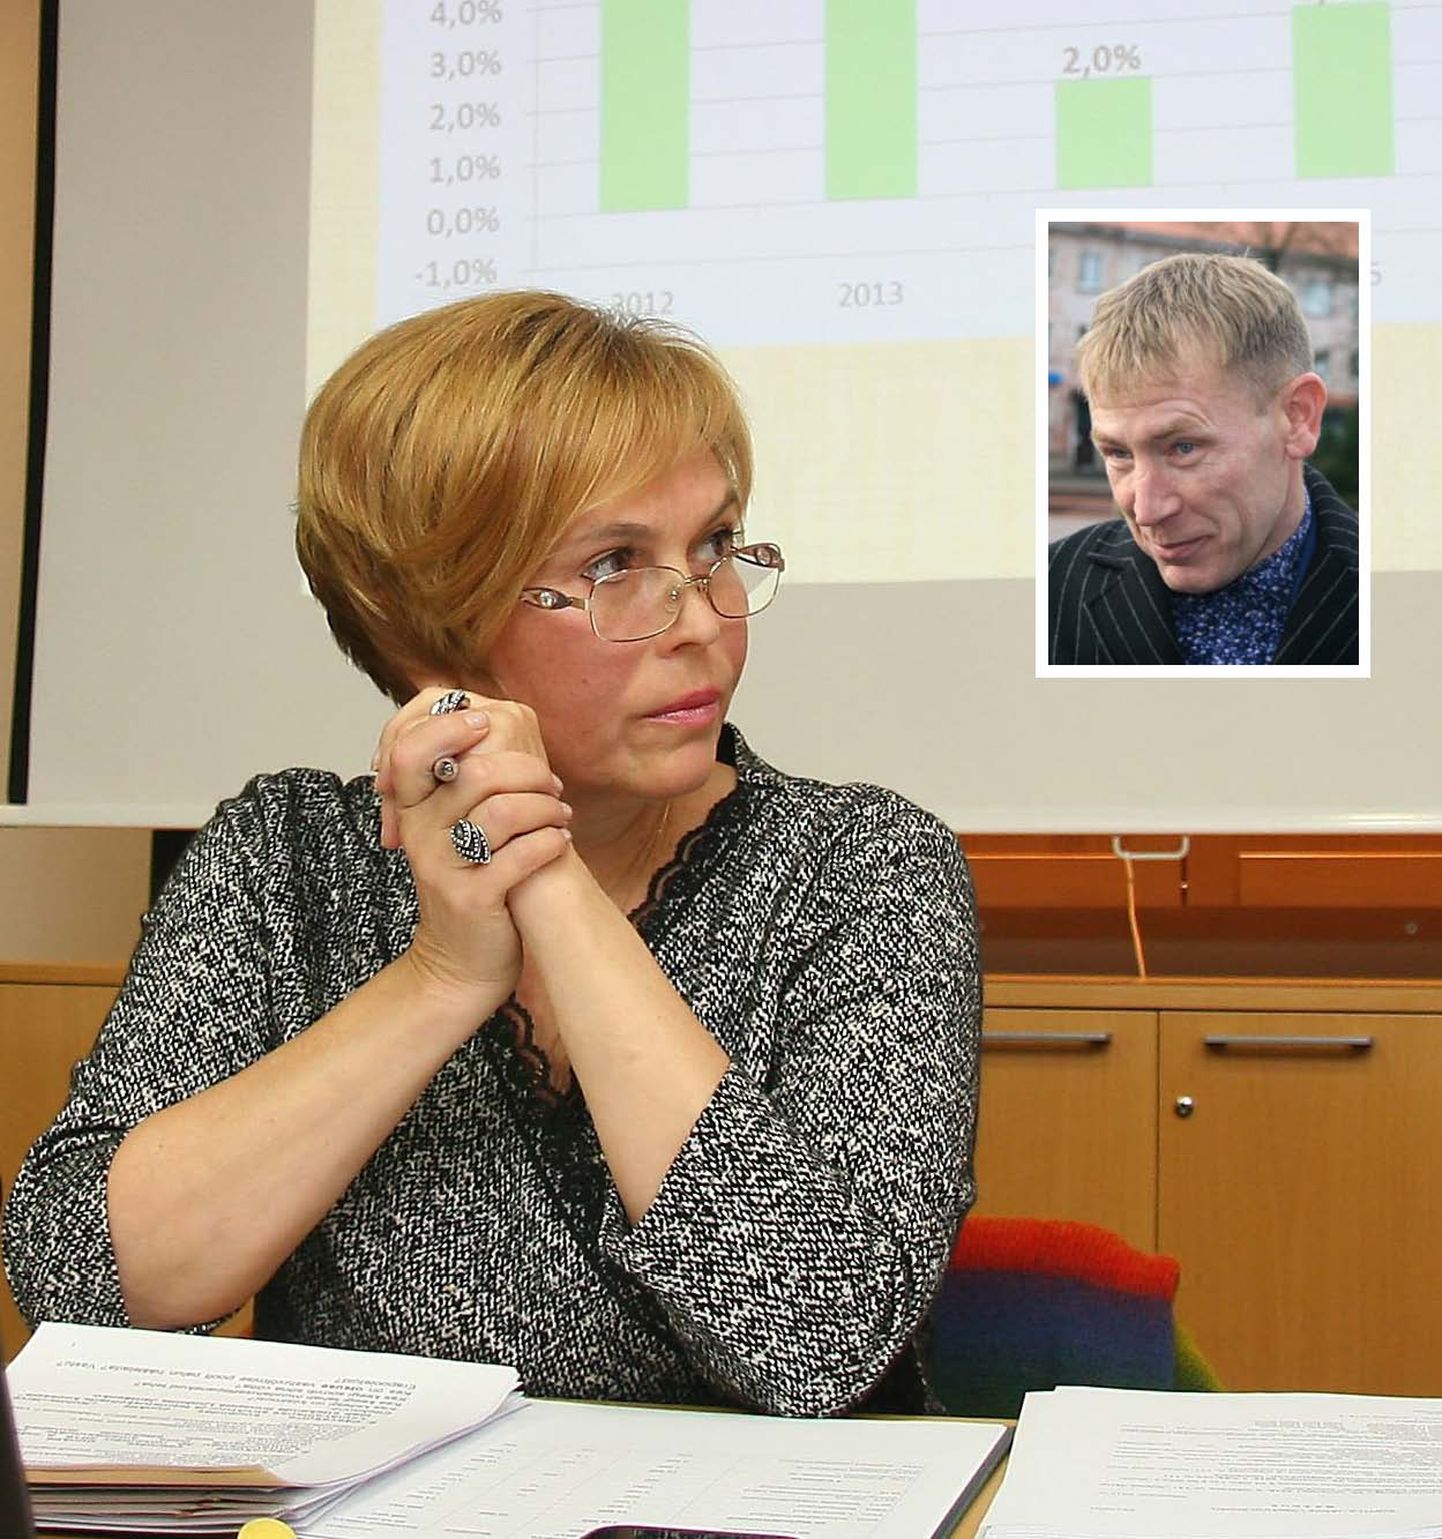 Рийна Иванова добилась половинчатой победы над Янеком Пахка в суде: одно утверждение должно быть опровергнуто, но желаемой денежной компенсации она не получит.